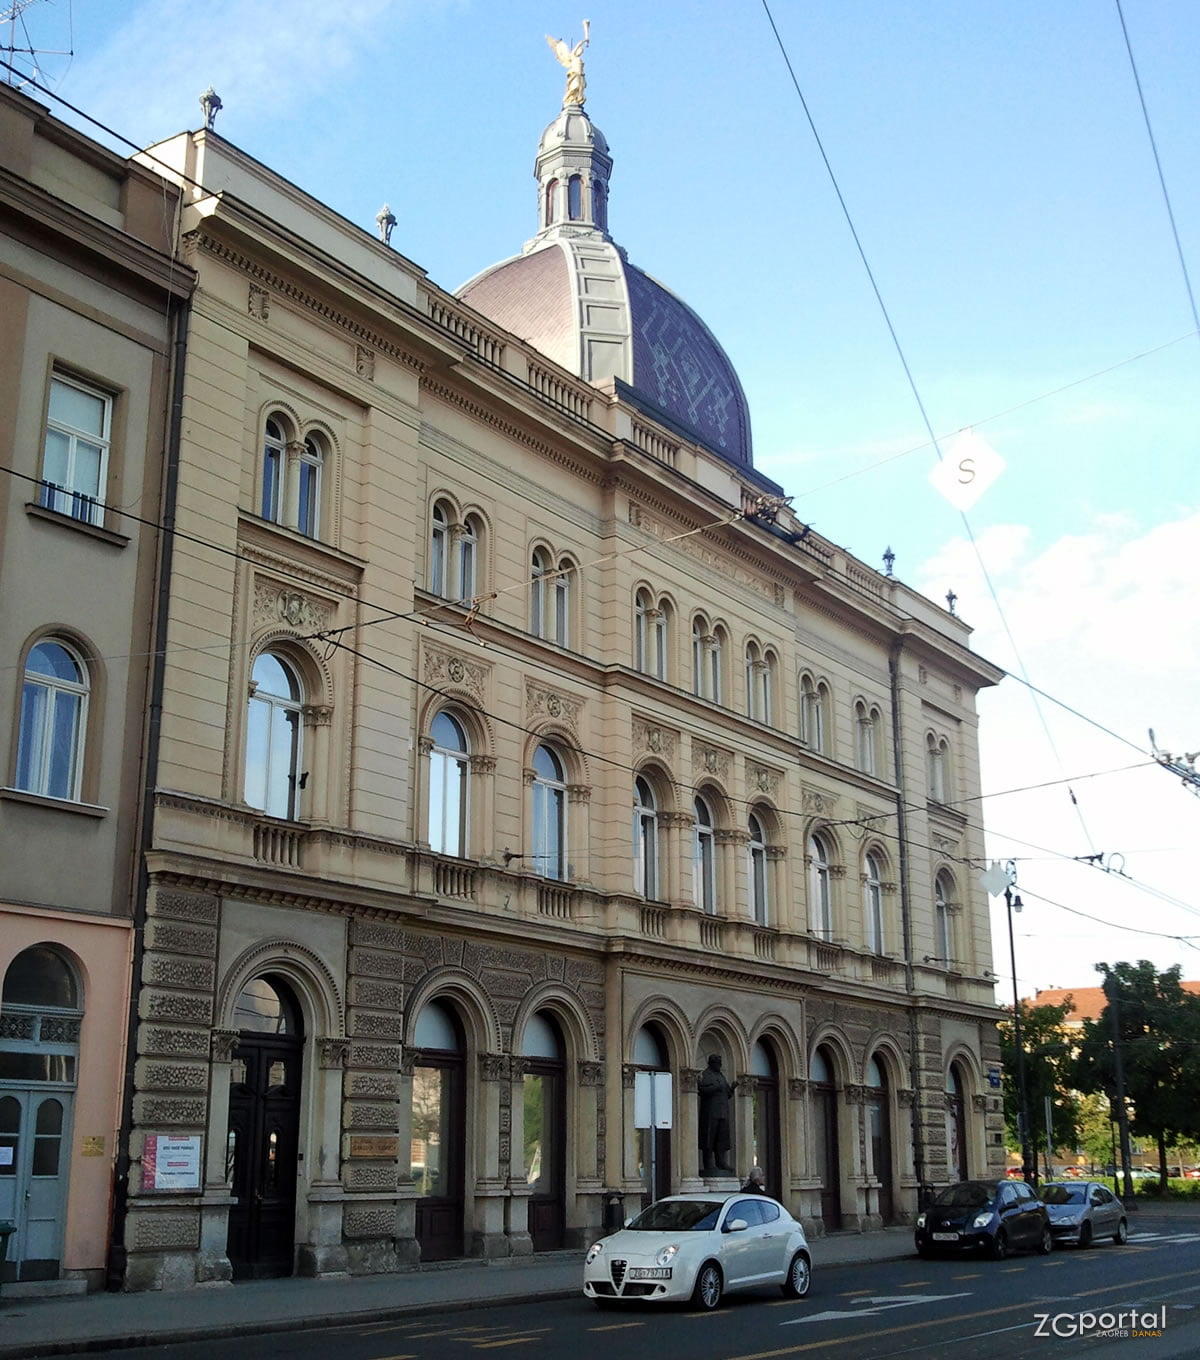 Gradska knjižnica, Trg Ante Starčevića 6, Zagreb